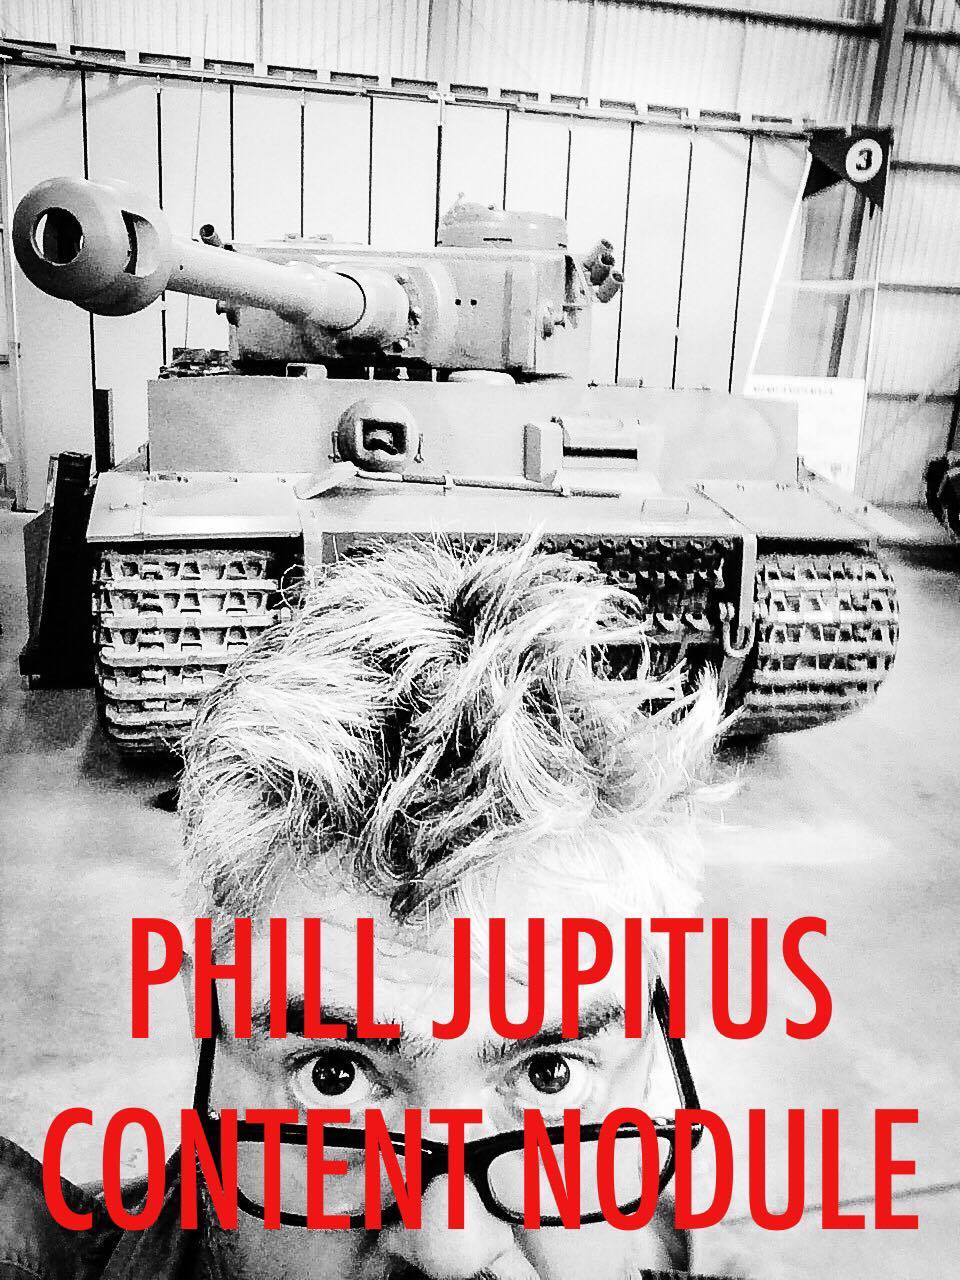 Phill Jupitus Content Nodule: Show 10